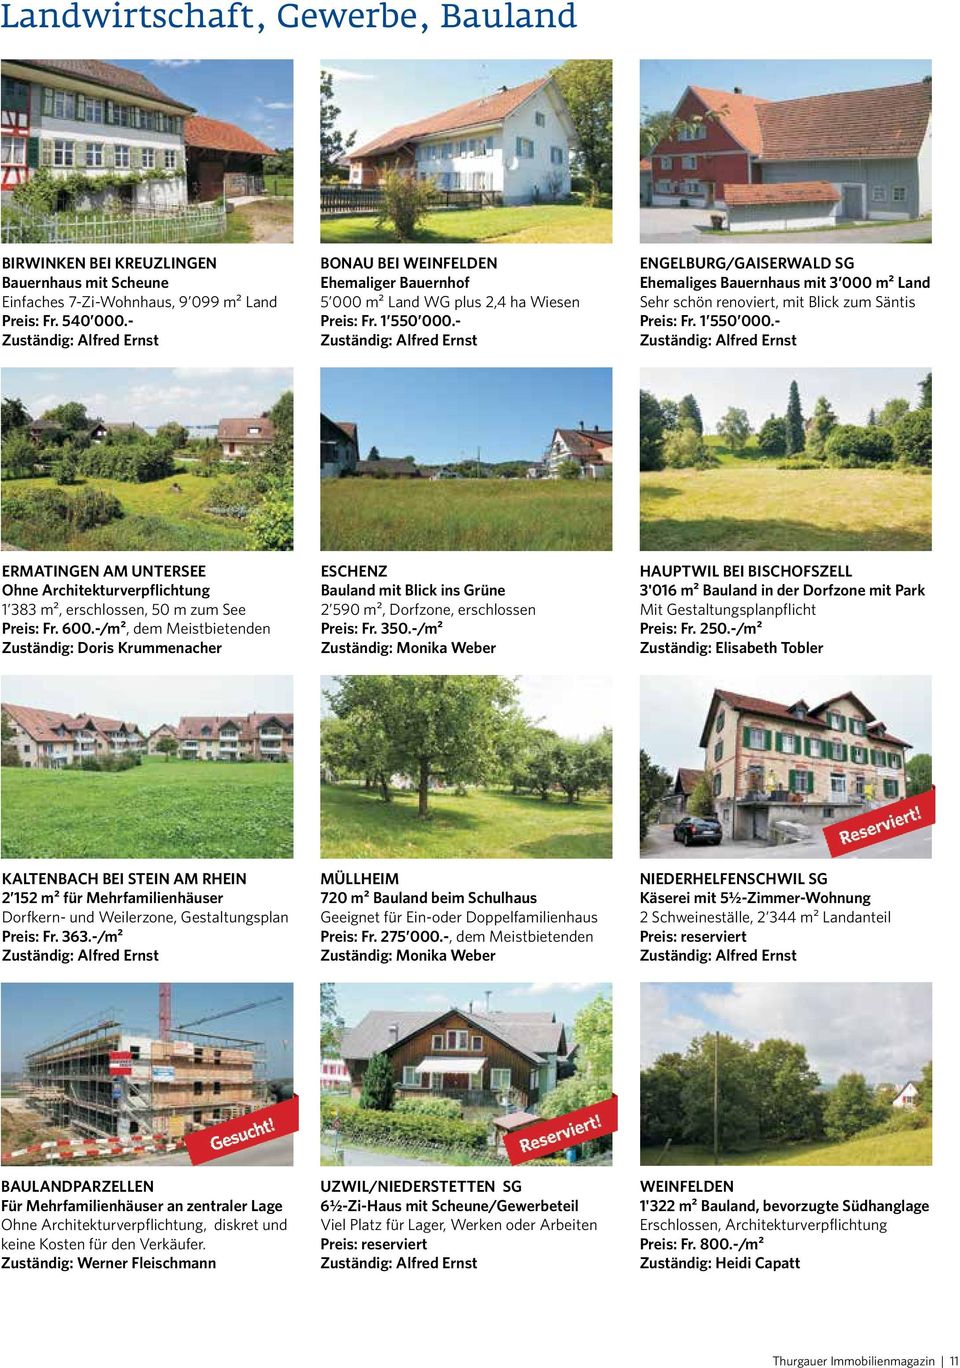 - ENGELBURG/GAISERWALD SG Ehemaliges Bauernhaus mit 3 000 m² Land Sehr schön renoviert, mit Blick zum Säntis Preis: Fr. 1 550 000.